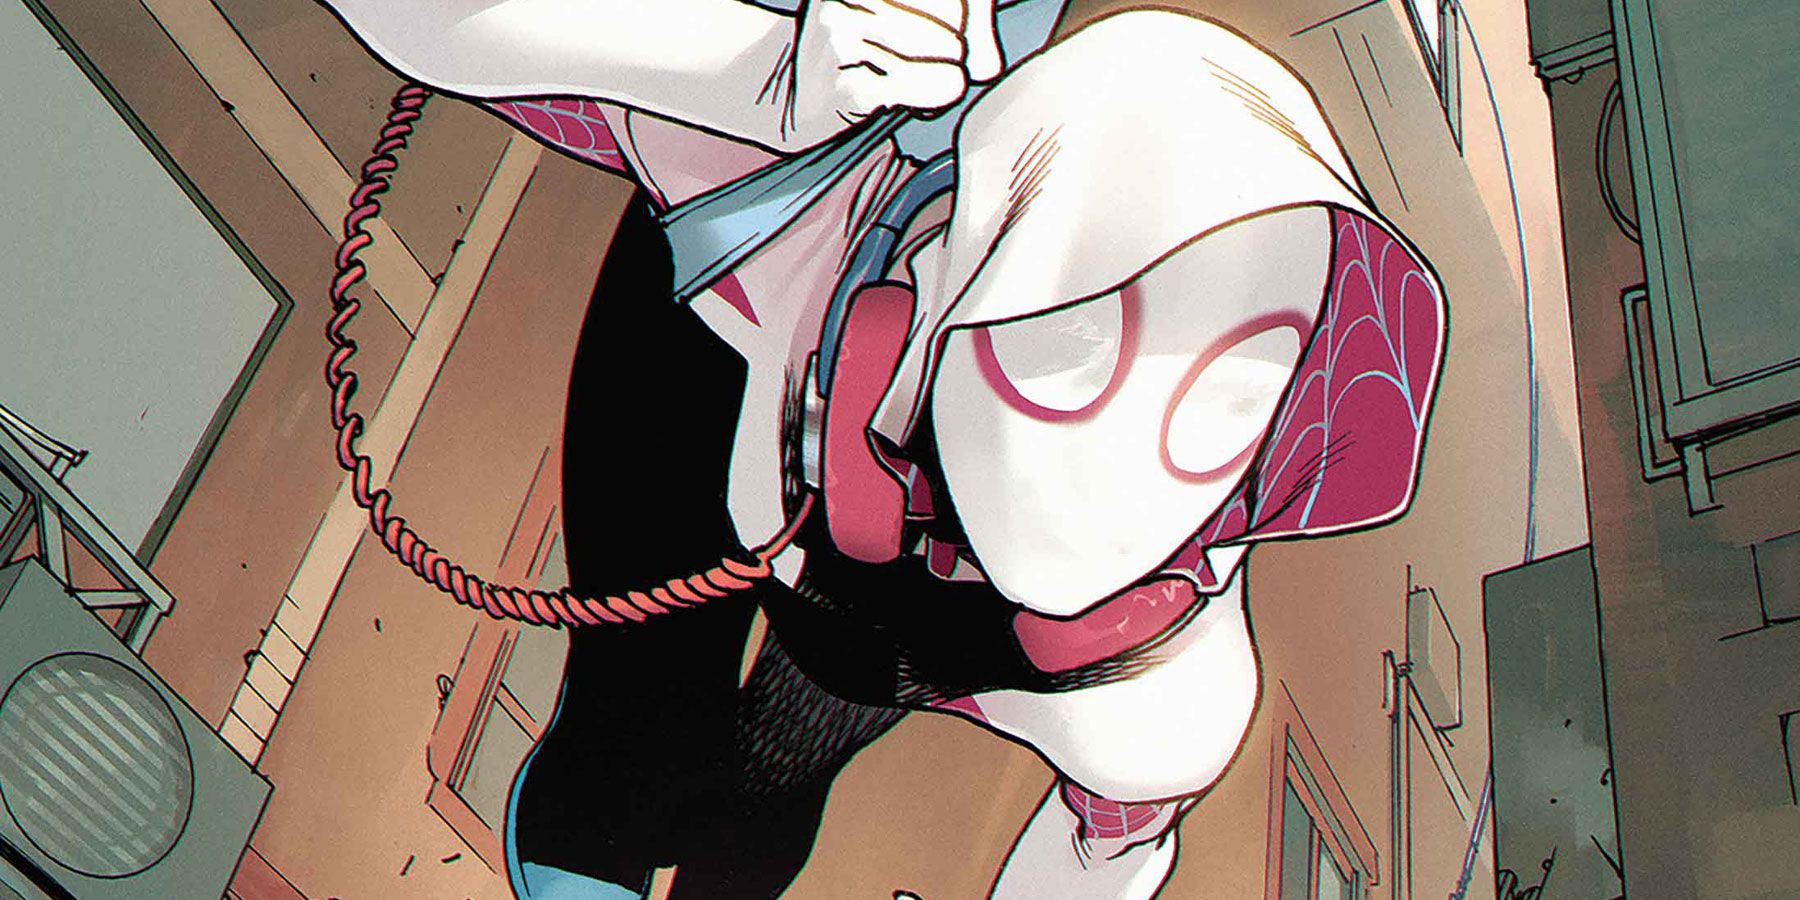 Spider-Gwen (2015 - 2018), Comic Series